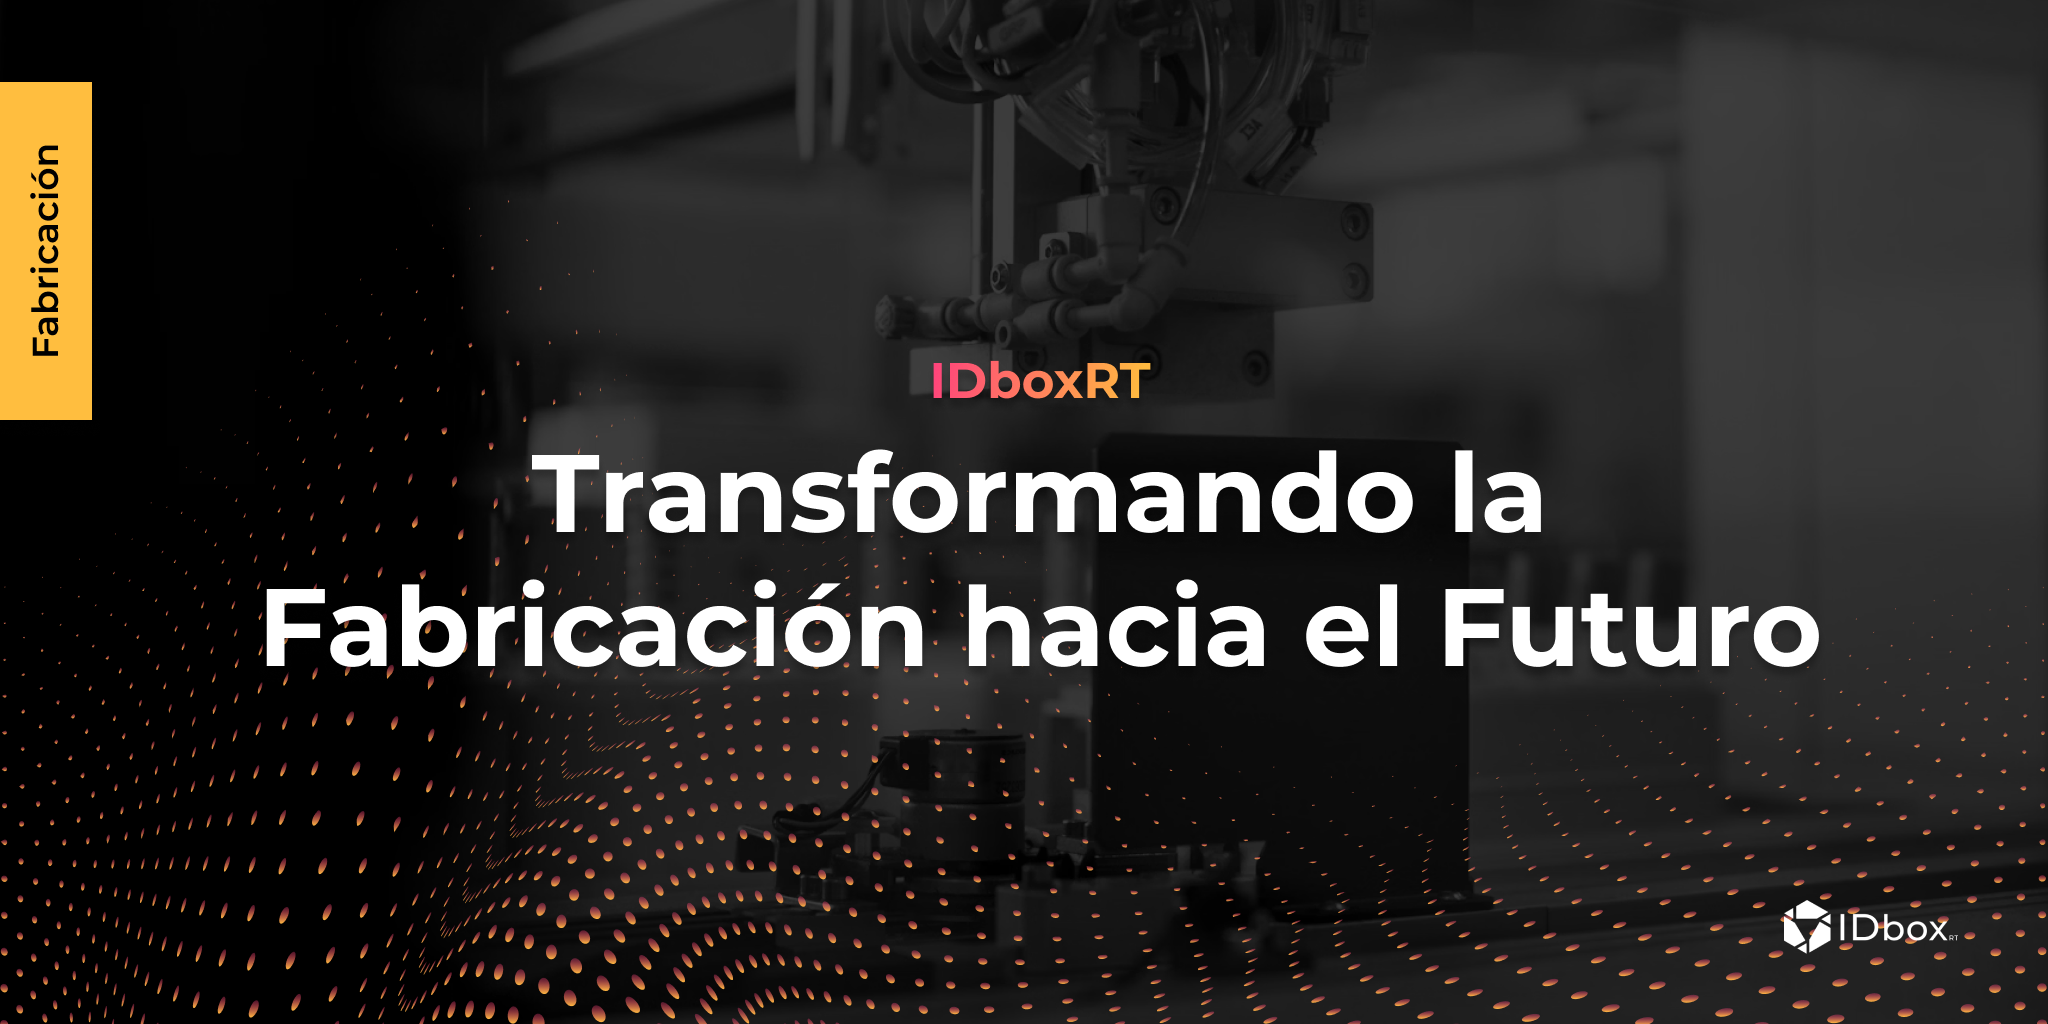 IDboxRT: transformando la fabricación hacia el futuro